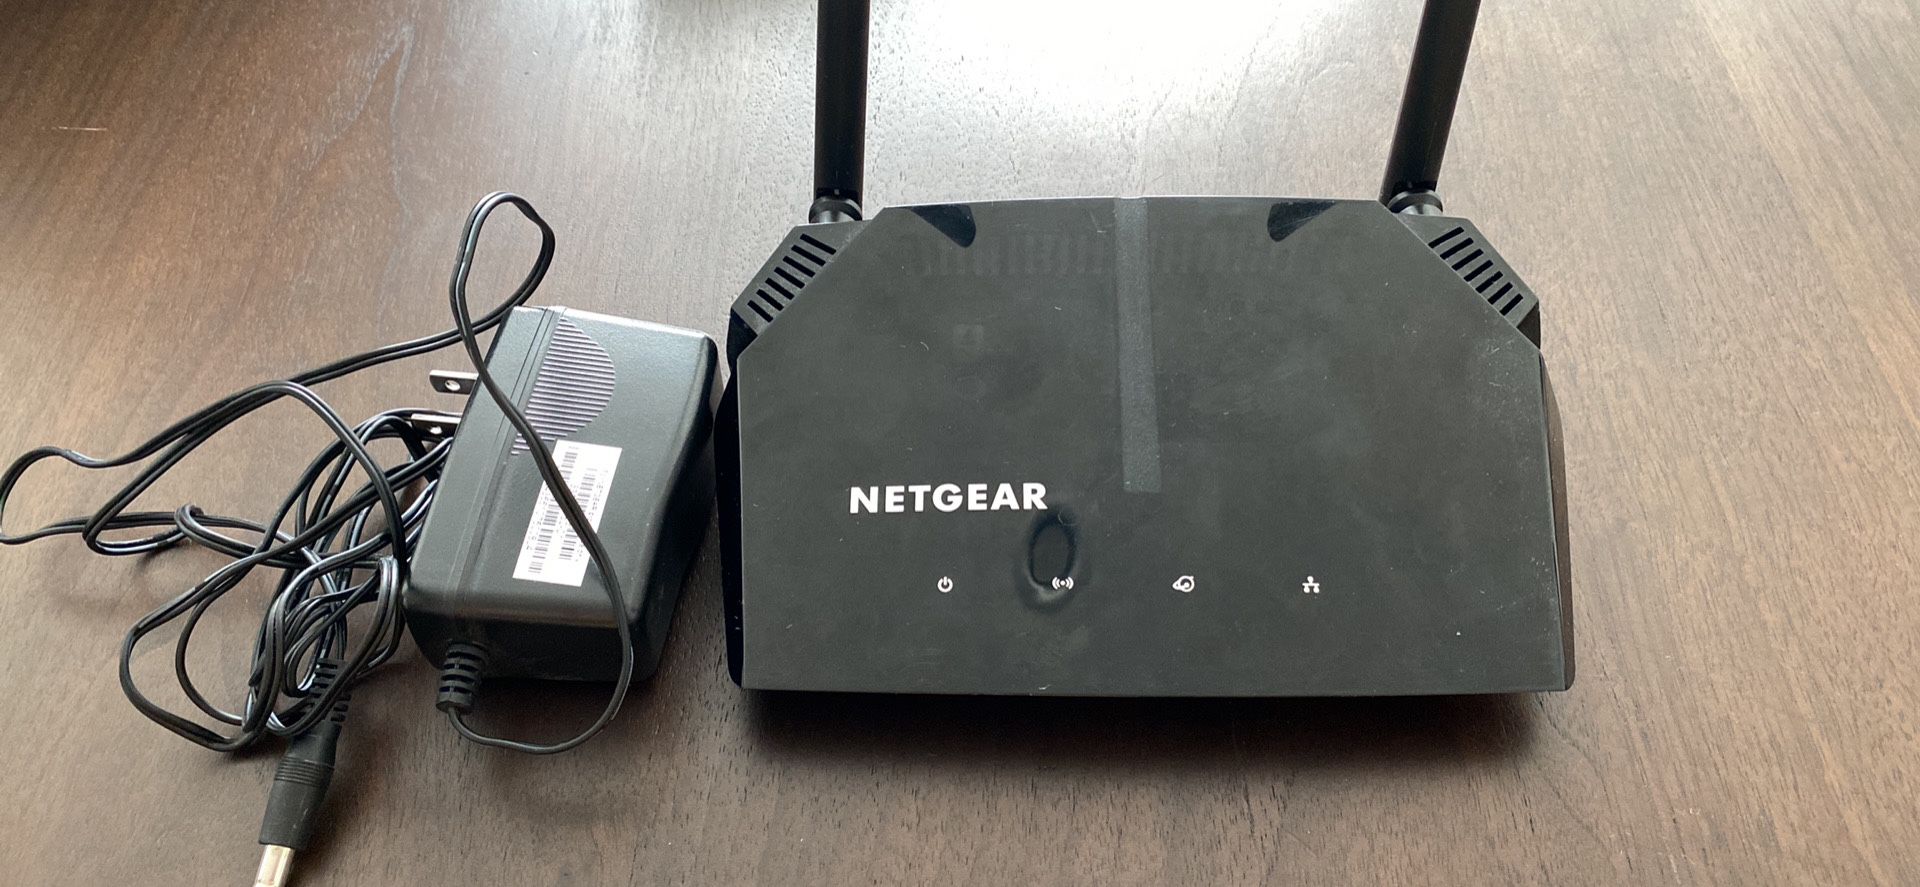 Netgear AC1200 Router 